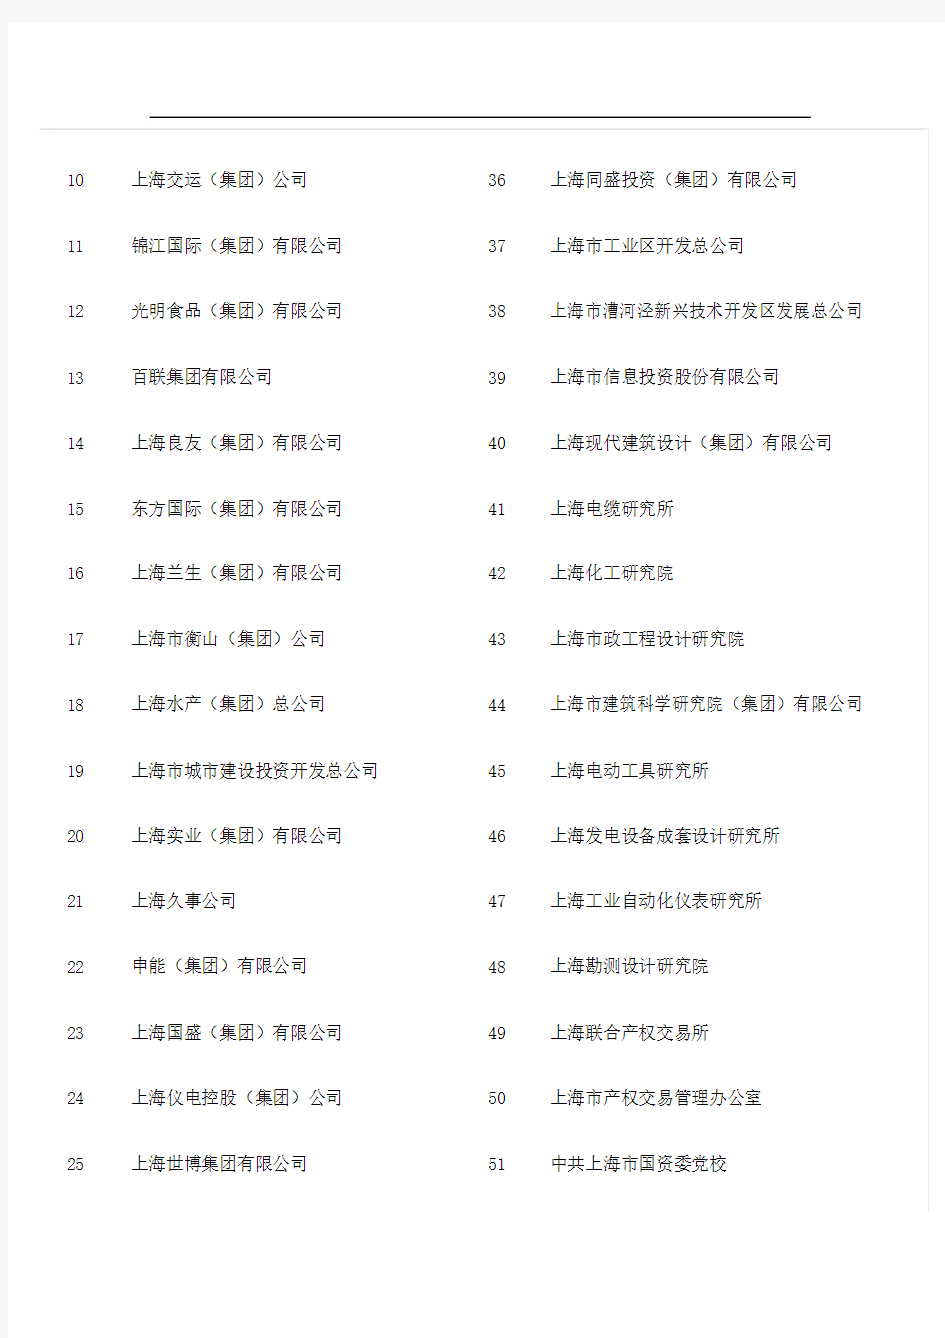 上海市国资委下属企业名单